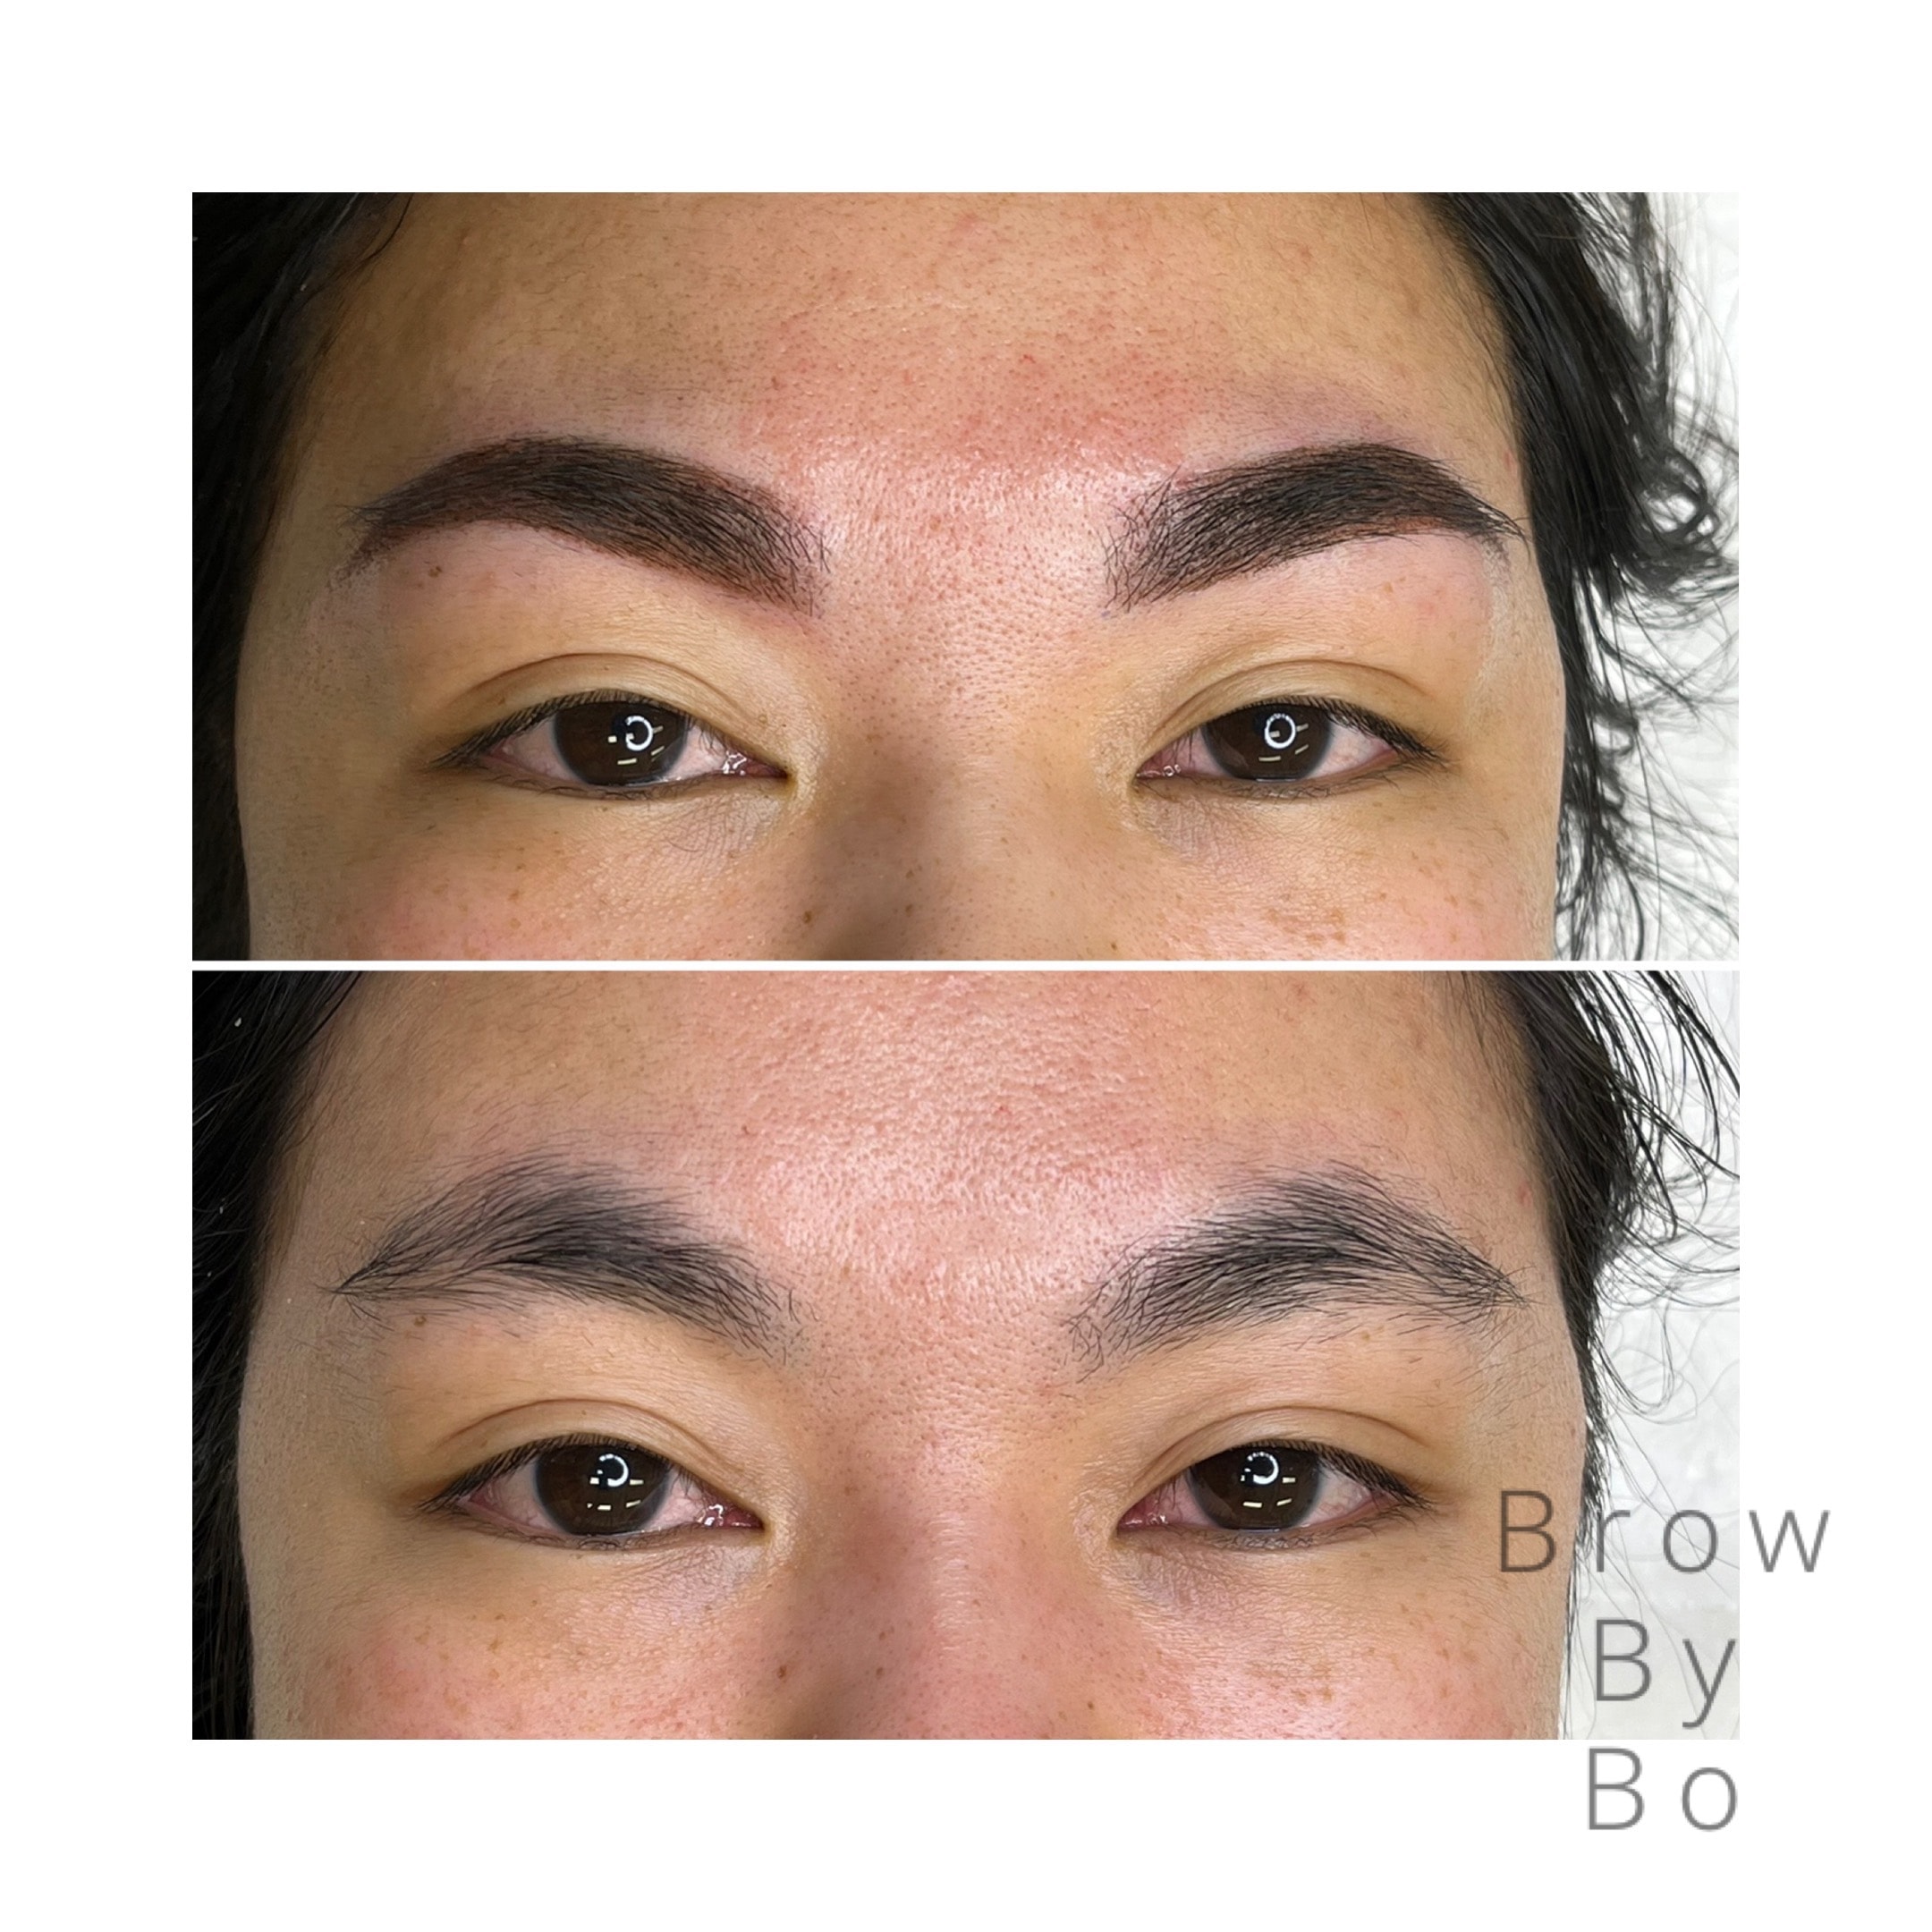 Velg mellom flere brynsbehandlinger og permanent makeup hos Brow Bandidas (8 av 9) (9 av 9)